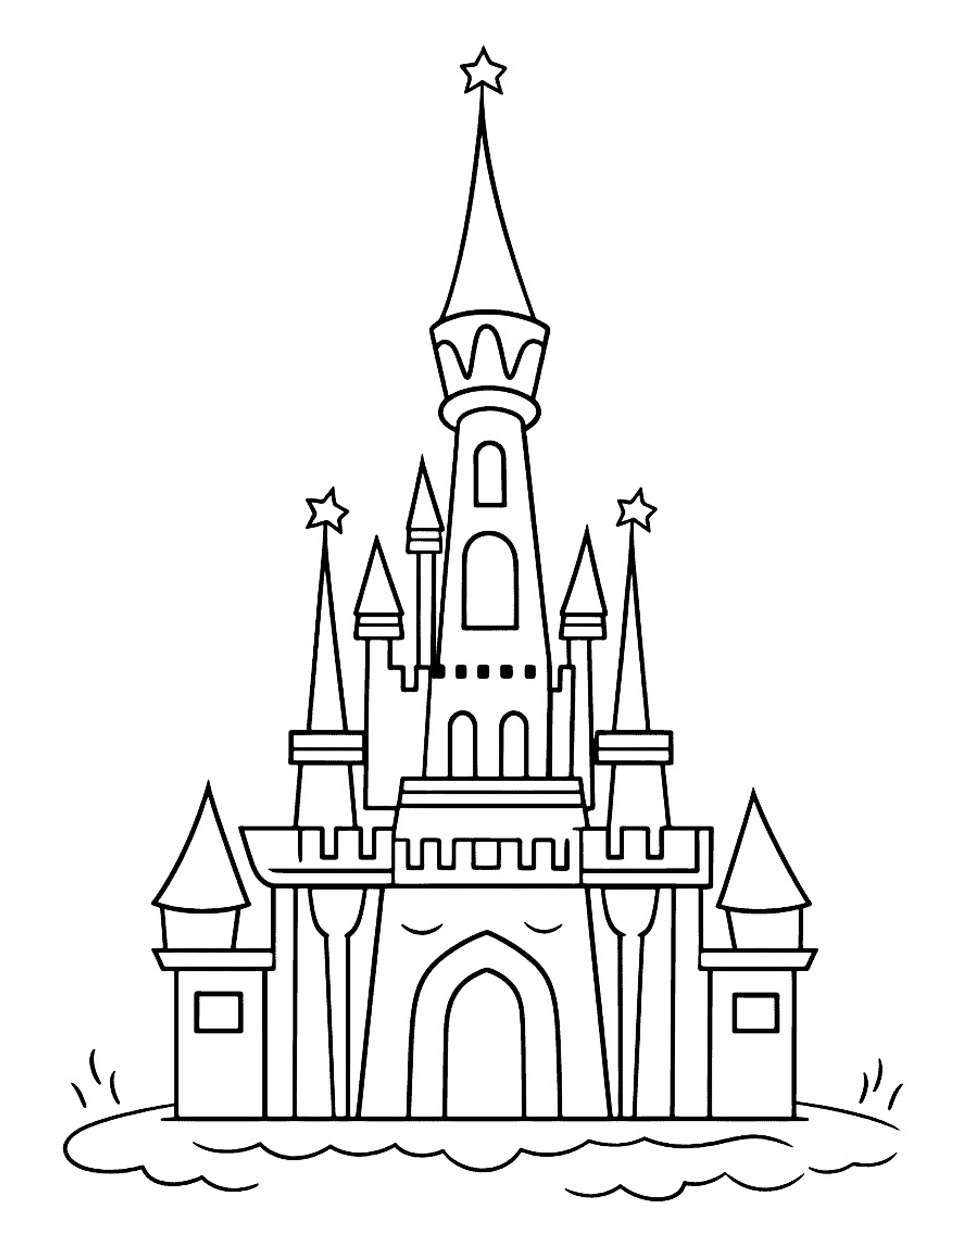 Dibujo sencillo de un castillo de cuento. Este castillo es una versión simplificada e inspirada del castillo de la Bella Durmiente.